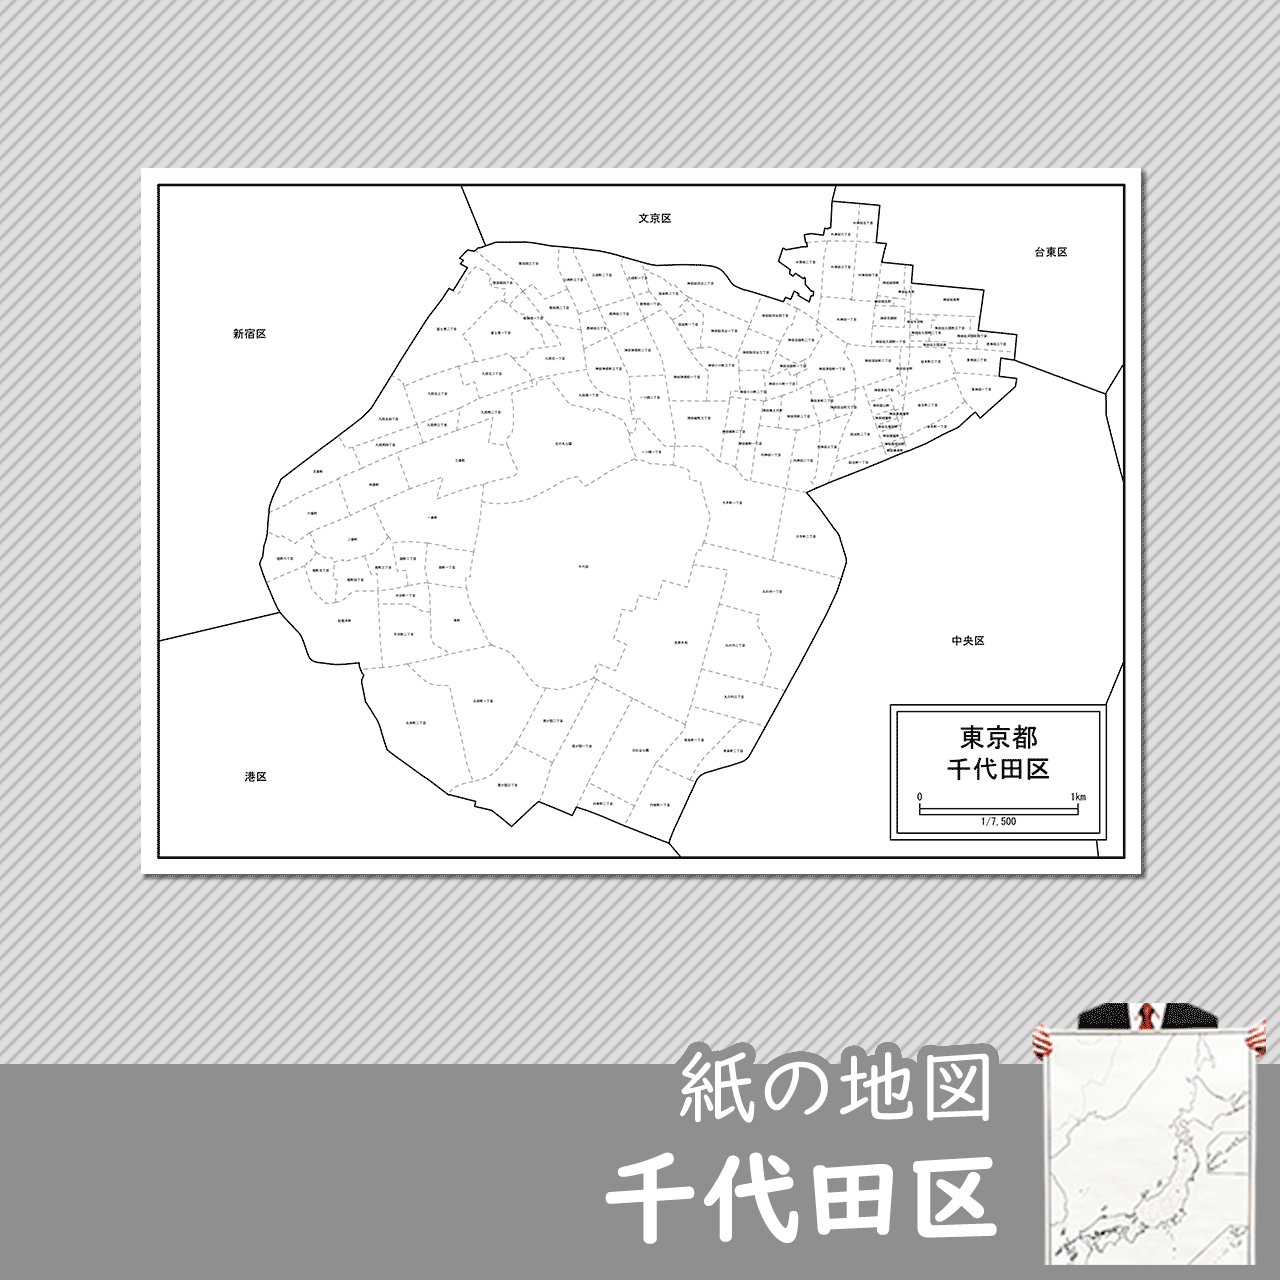 東京都千代田区の紙の白地図のサムネイル